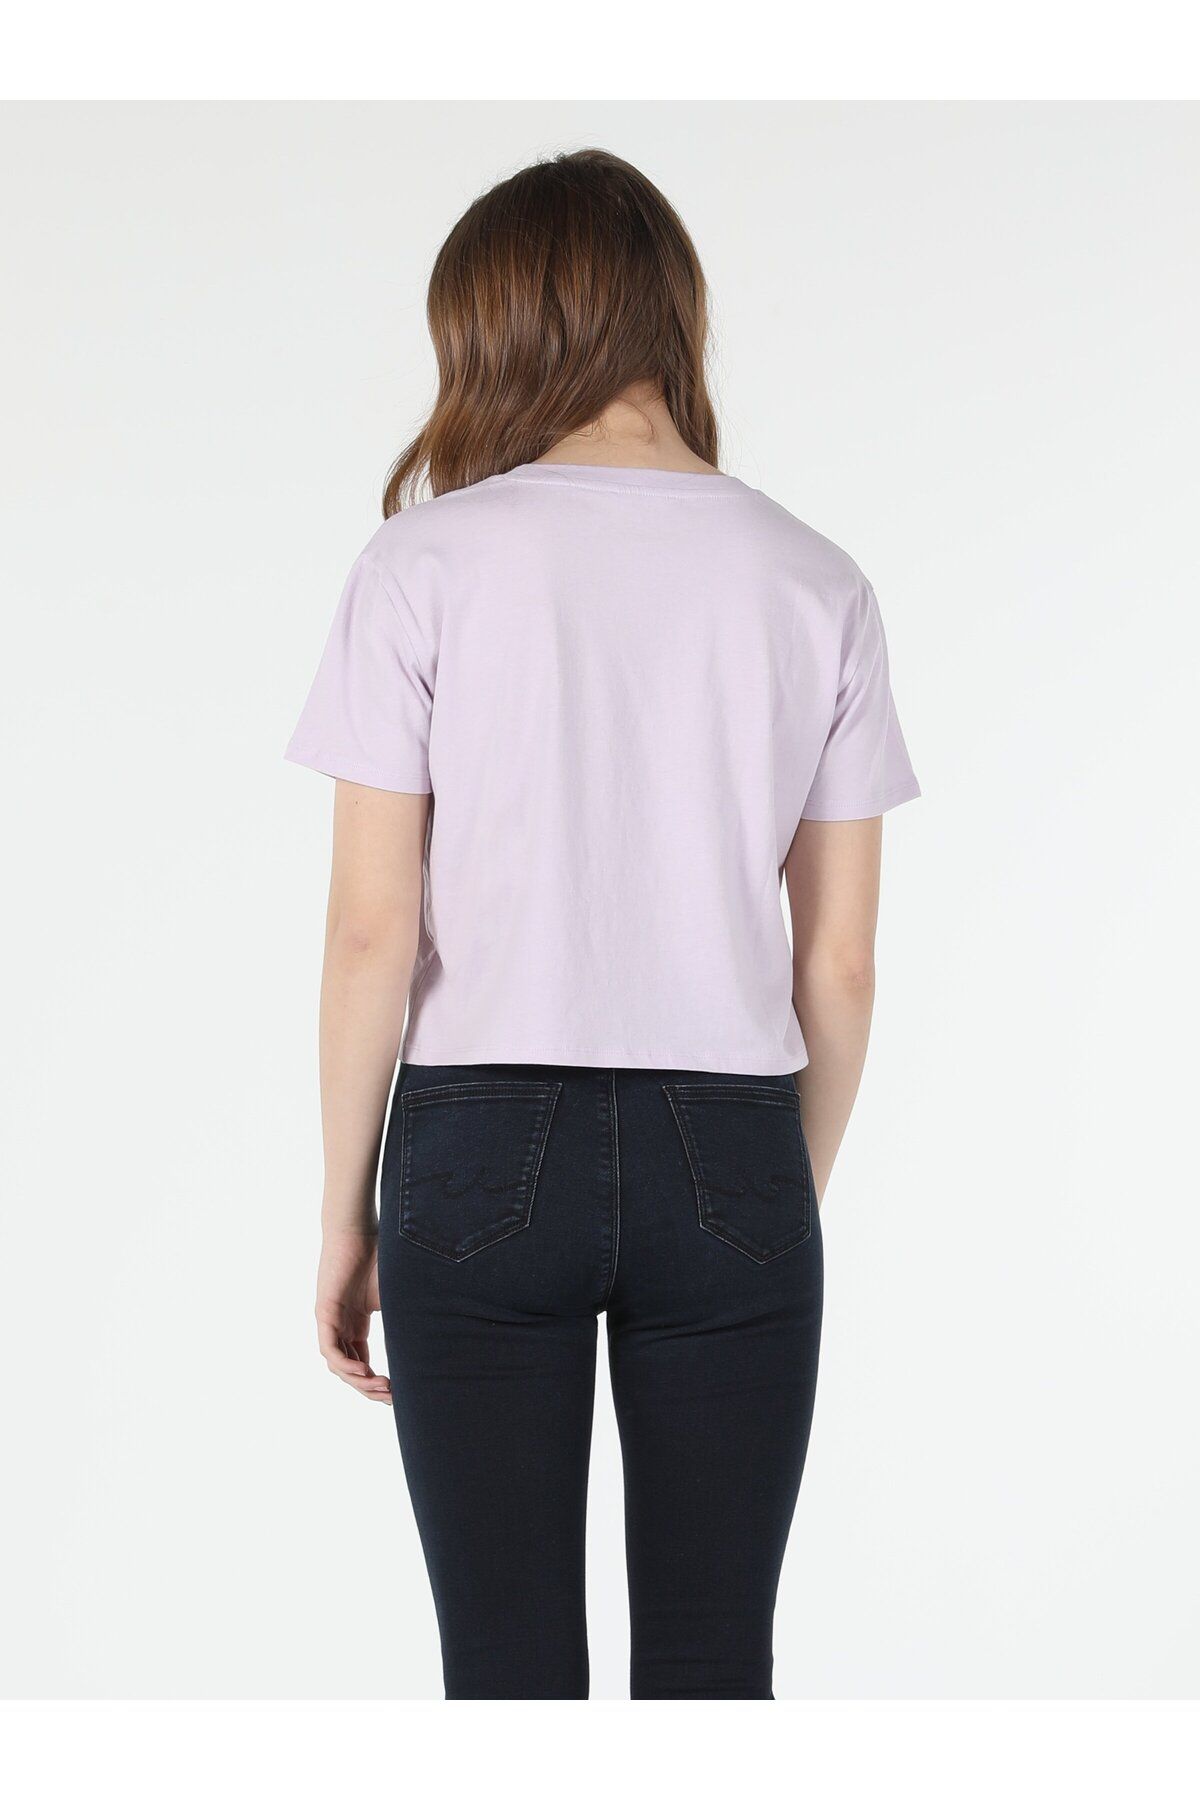 Colin’s تی شرت آستین کوتاه زنانه به رنگ بنفش چاپ شده با یقه ی منظم